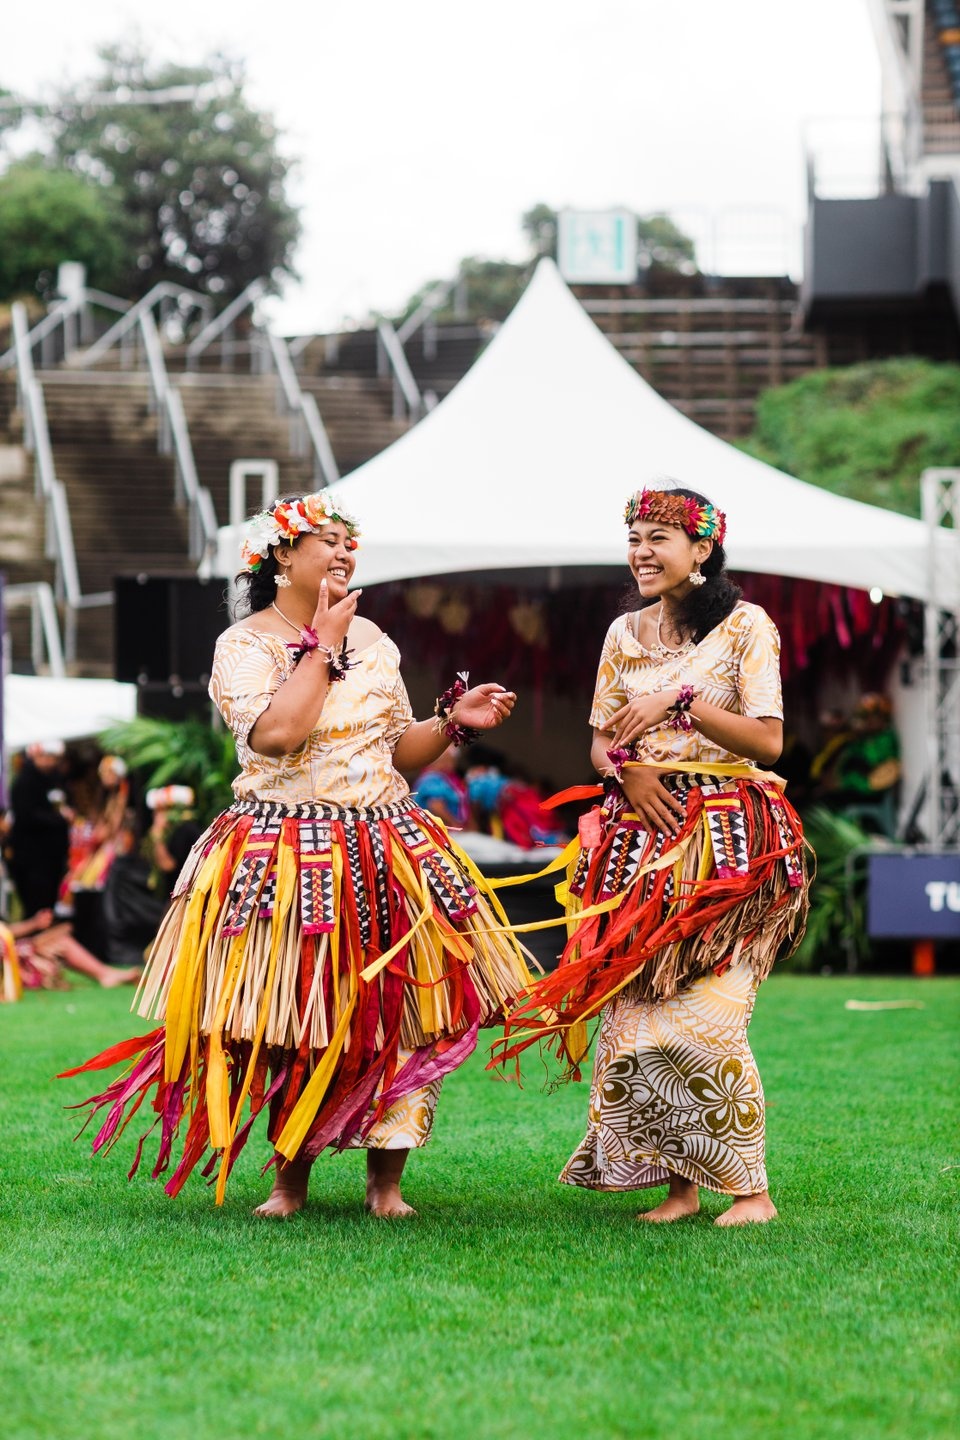 History of Pasifika Festival